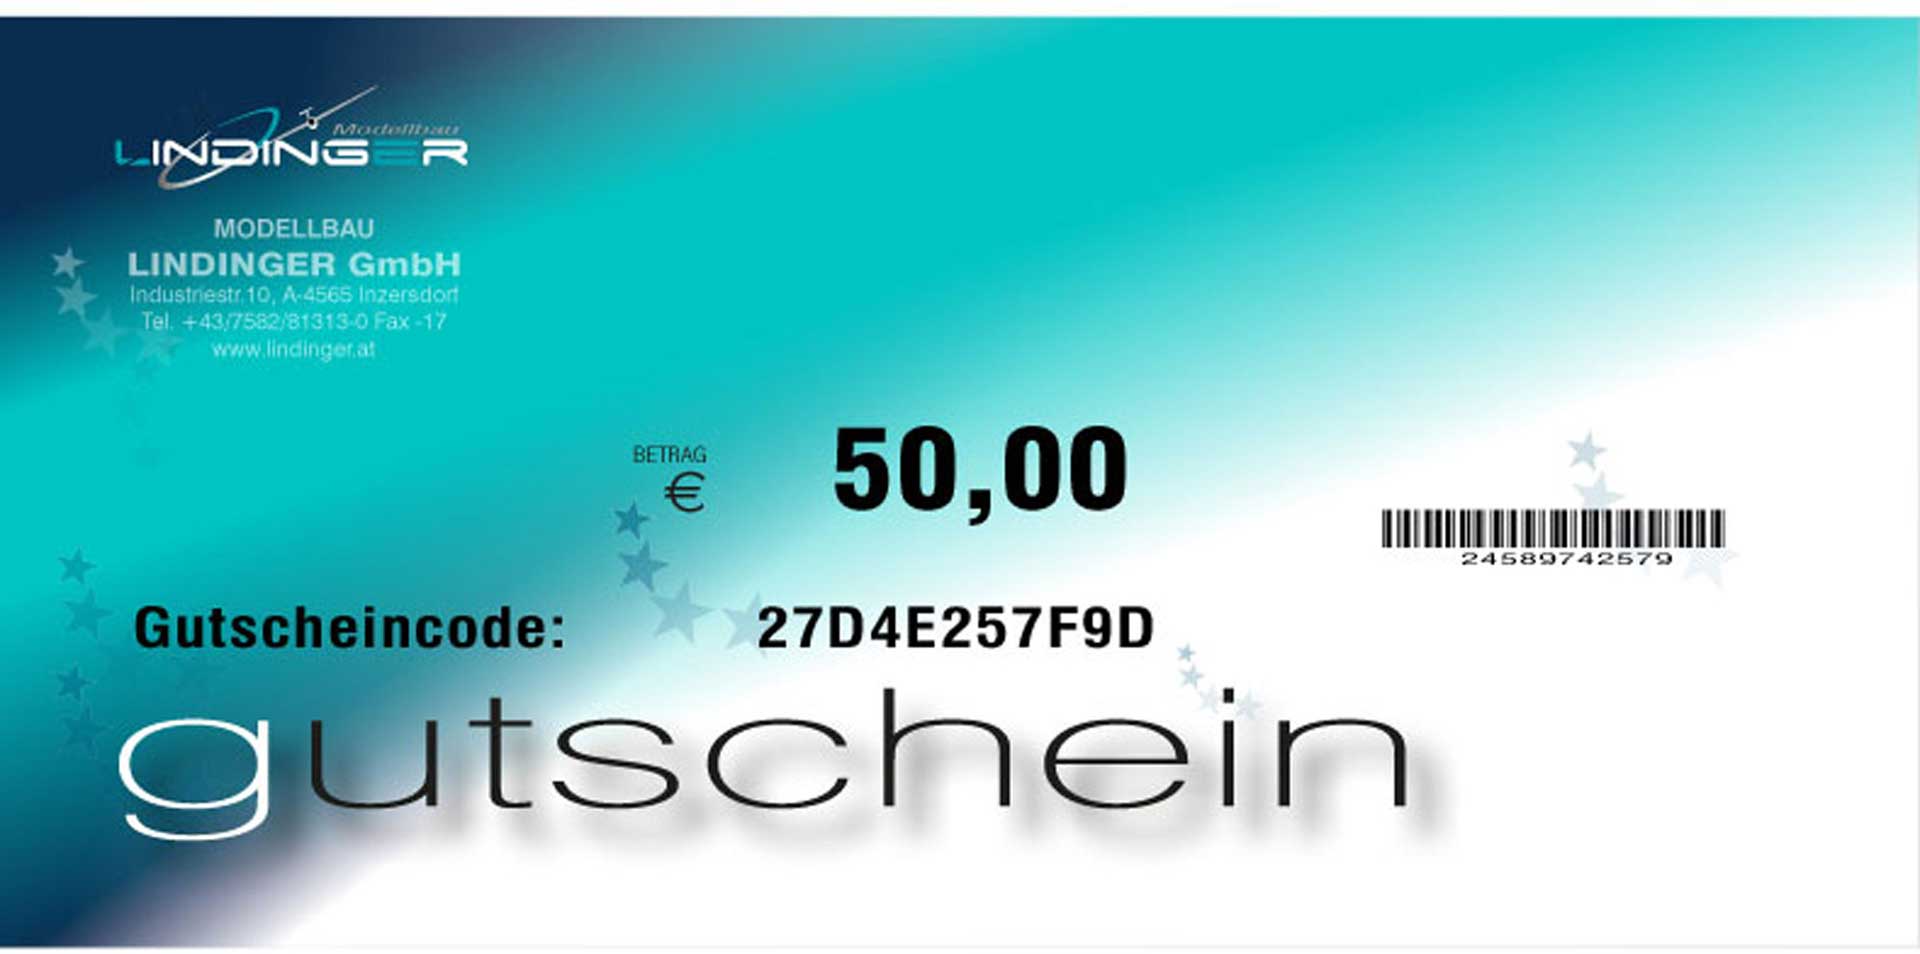 MODELLBAU LINDINGER E-GUTSCHEIN LINDINGER 50,- EURO PDF